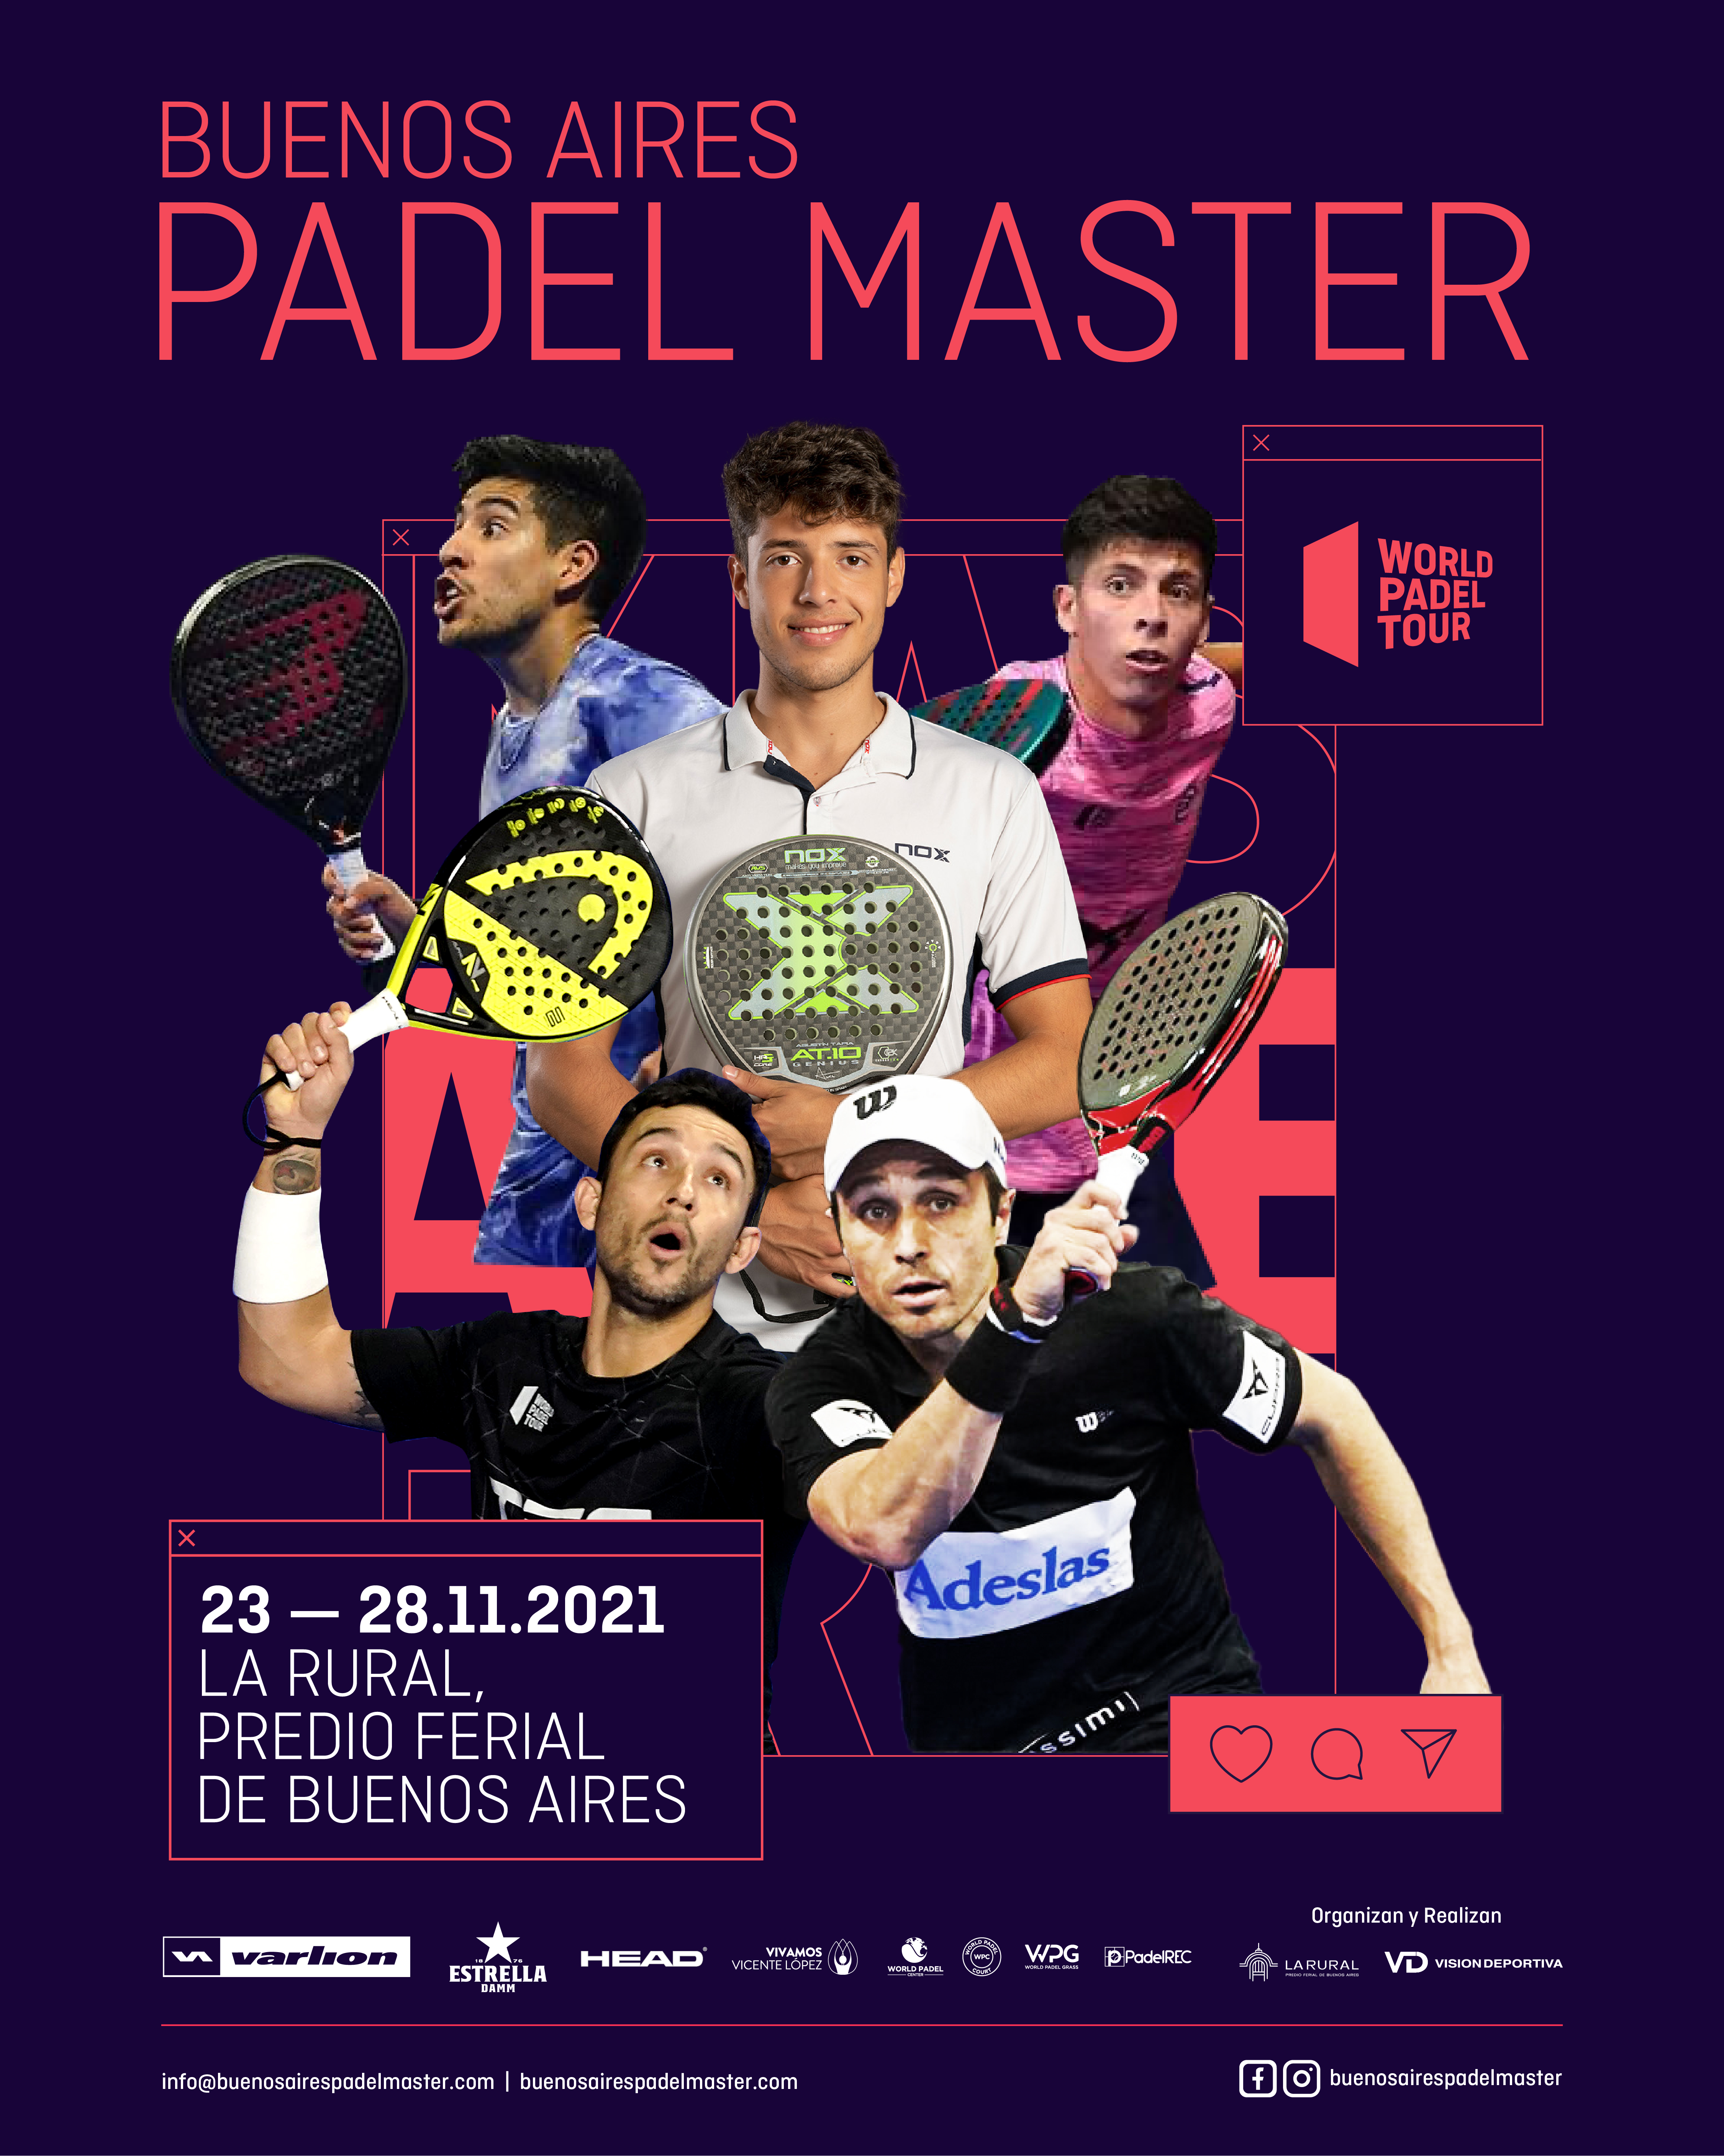 Buenos Aires Pádel Master 2021